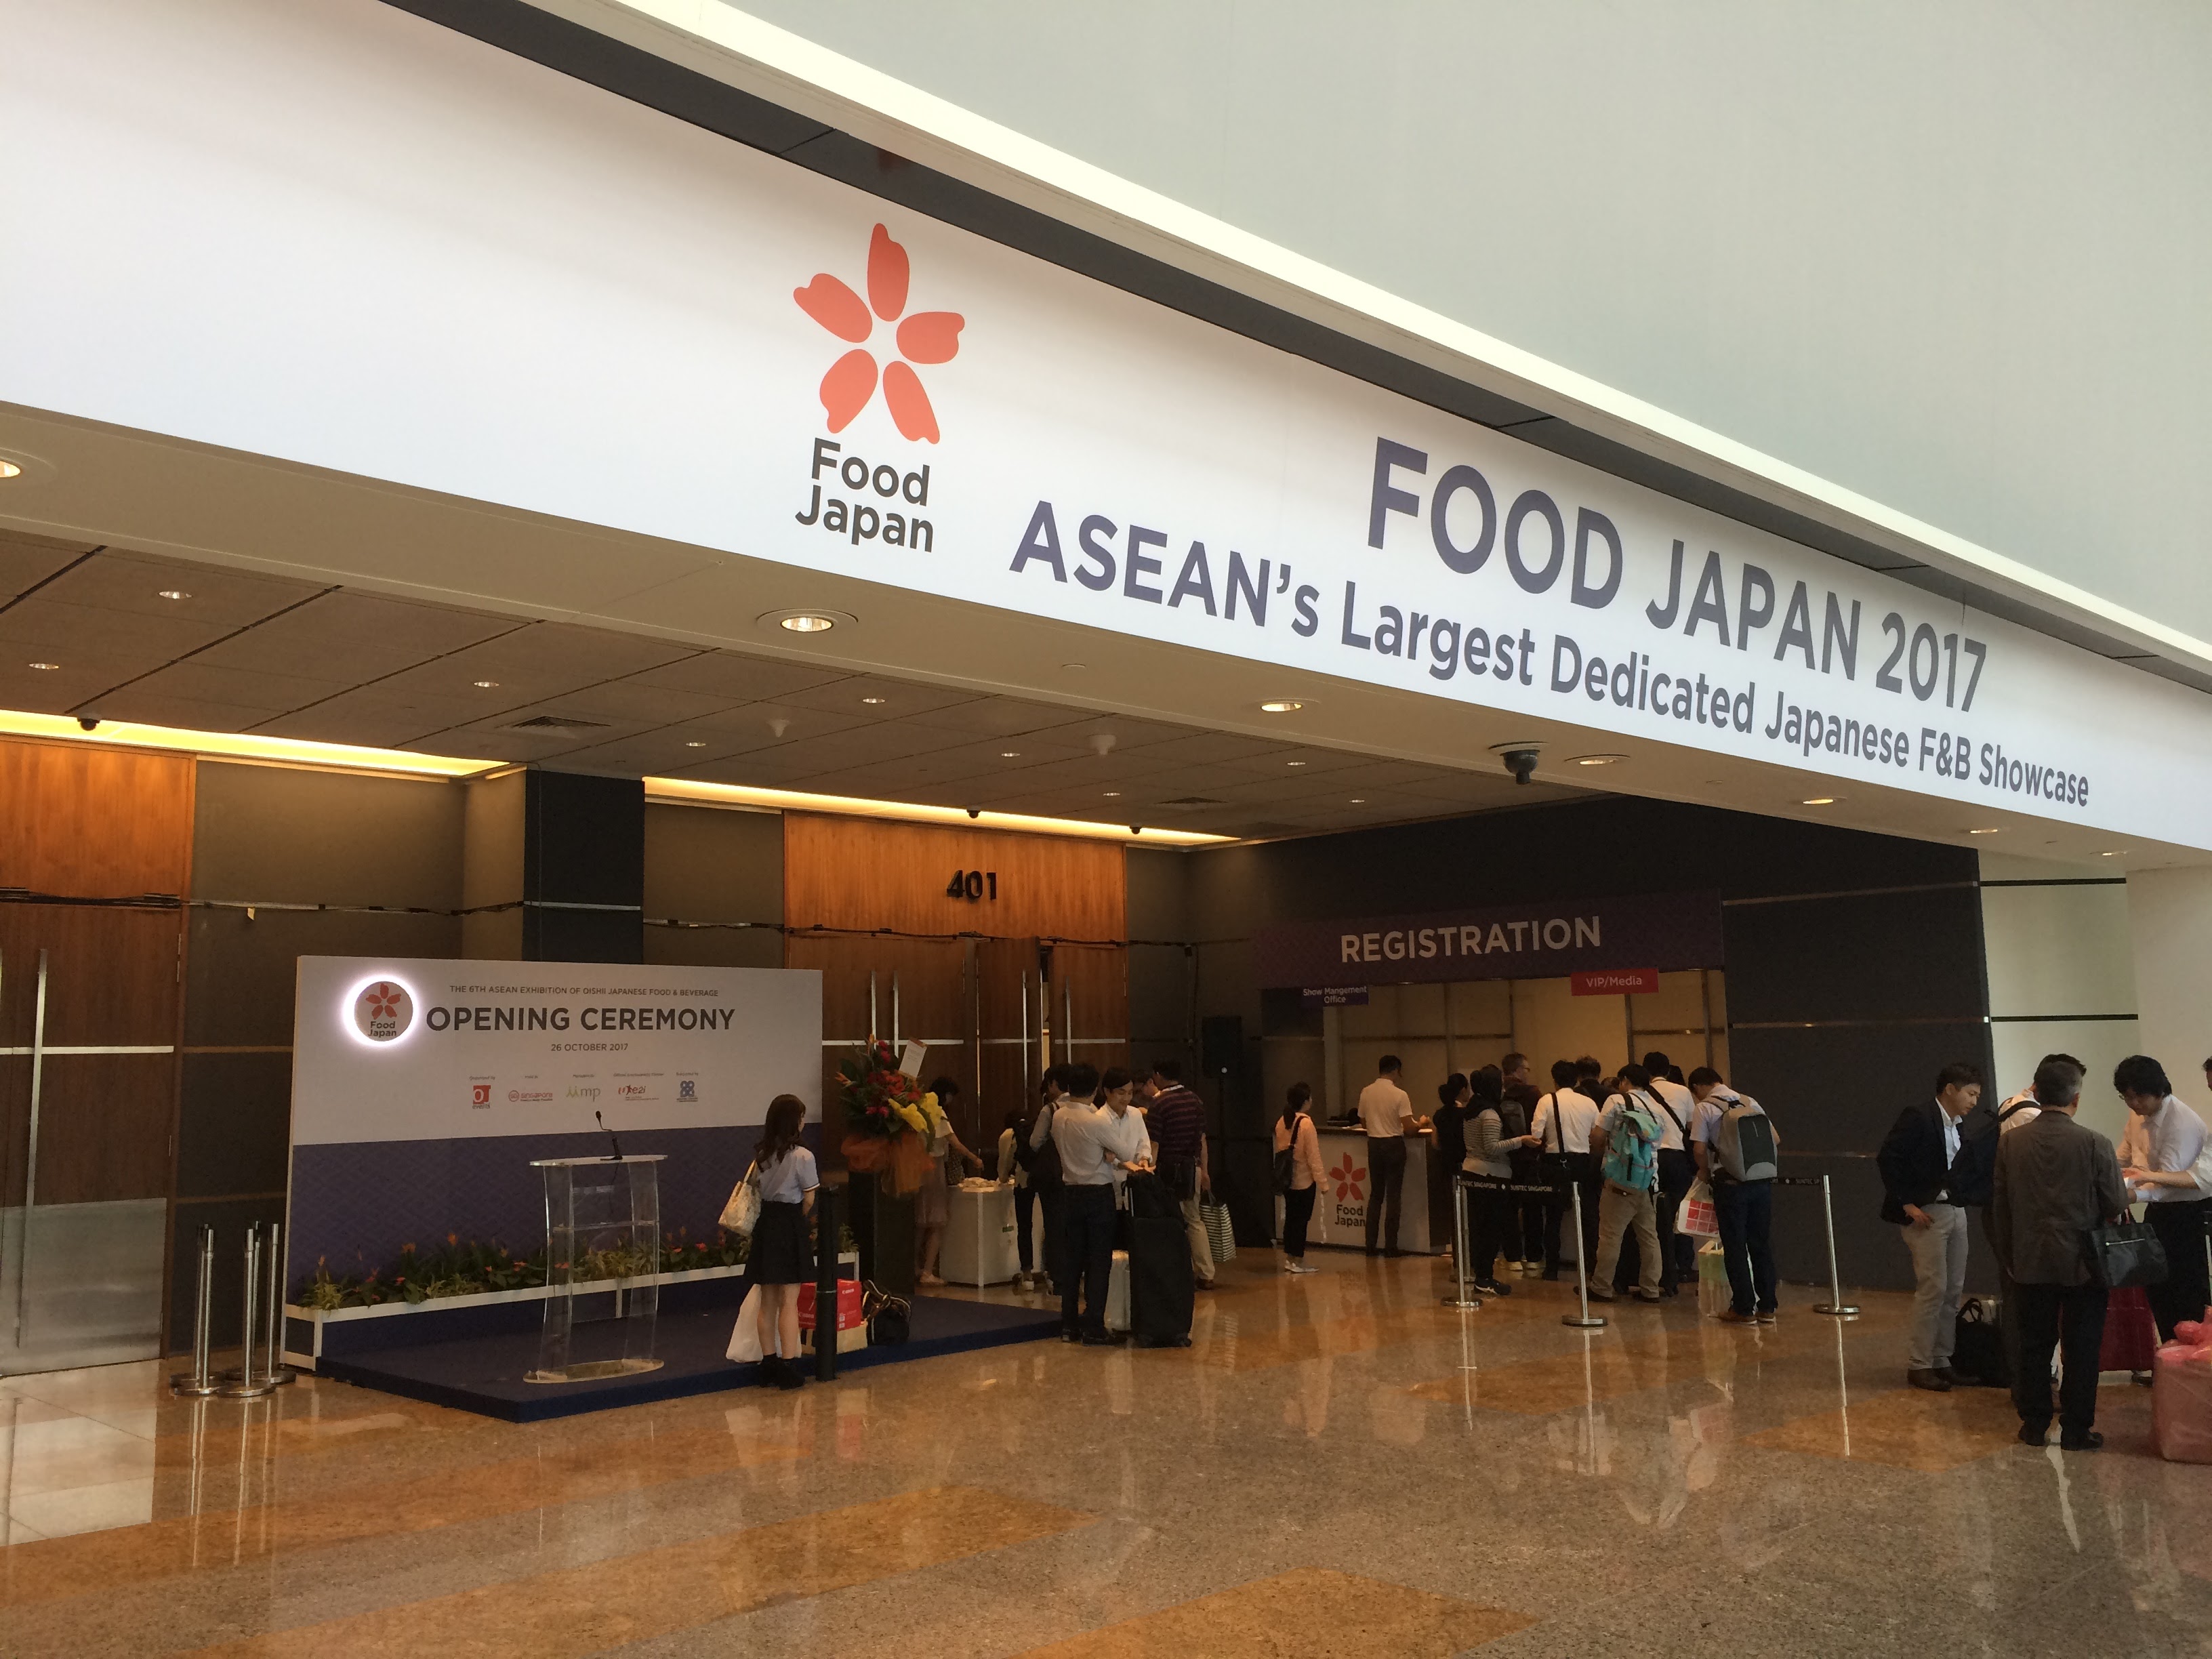 青森県のシンガポール食の催事「Food Japan」への出展を支援しました